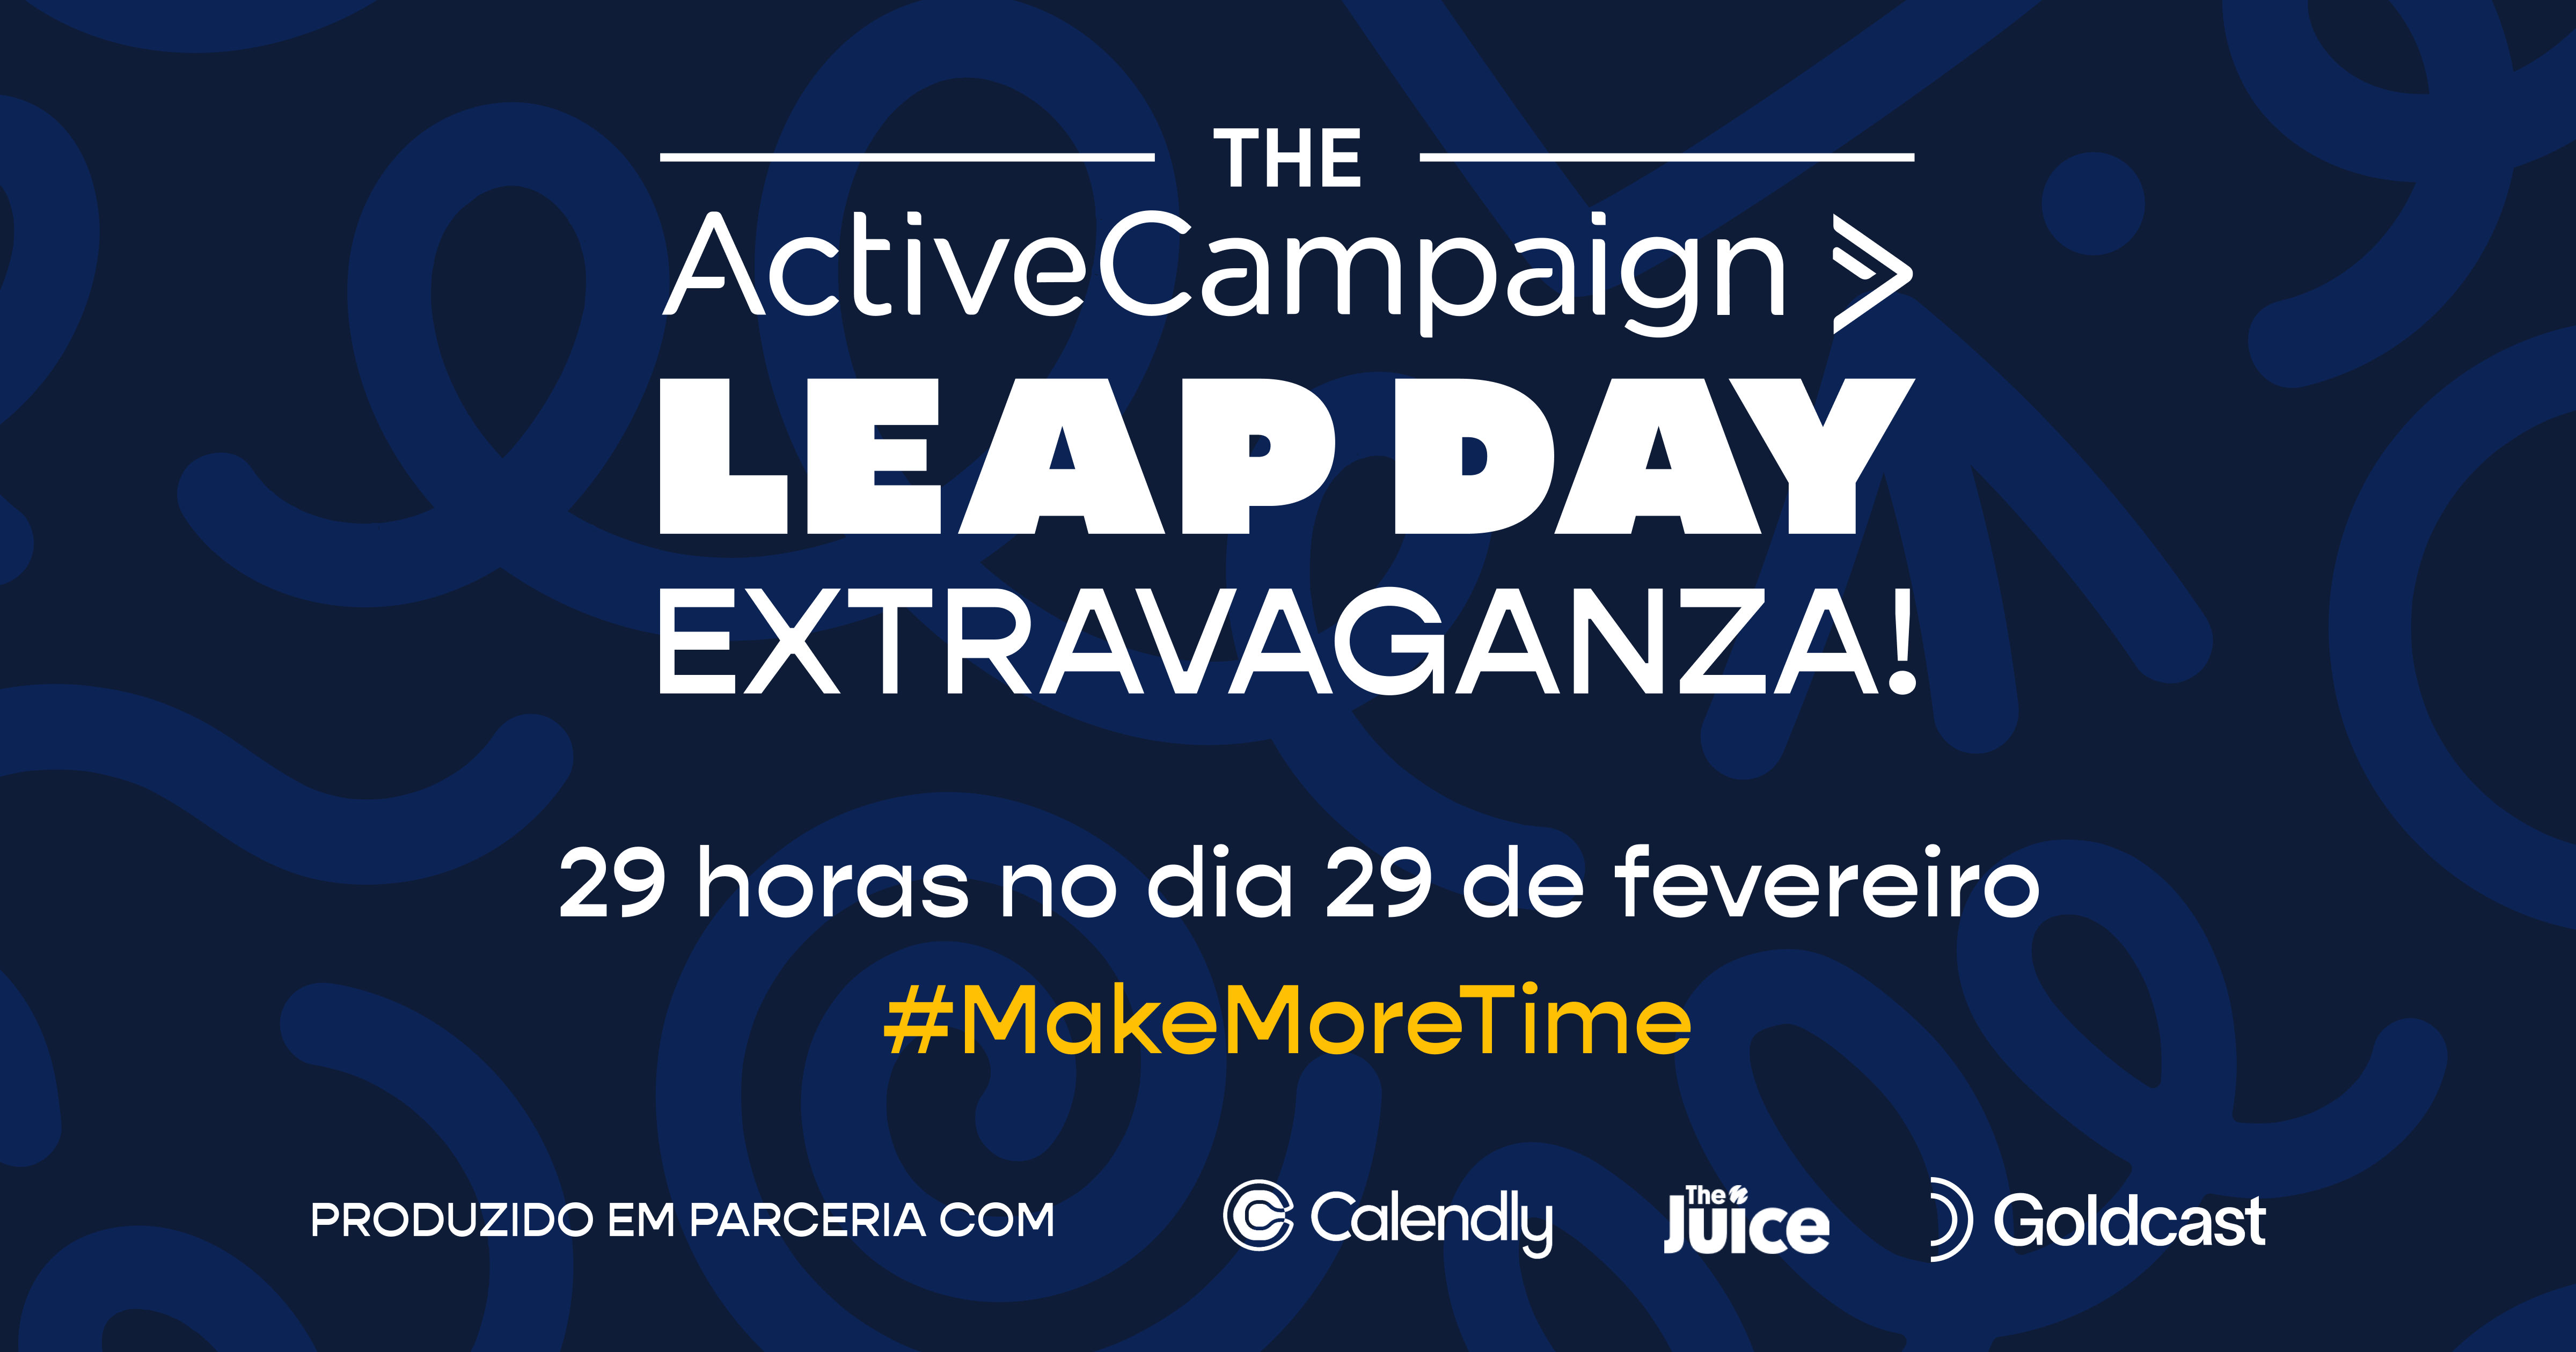 Otimize seu tempo: participe do Leap Day Extravaganza da ActiveCampaign!